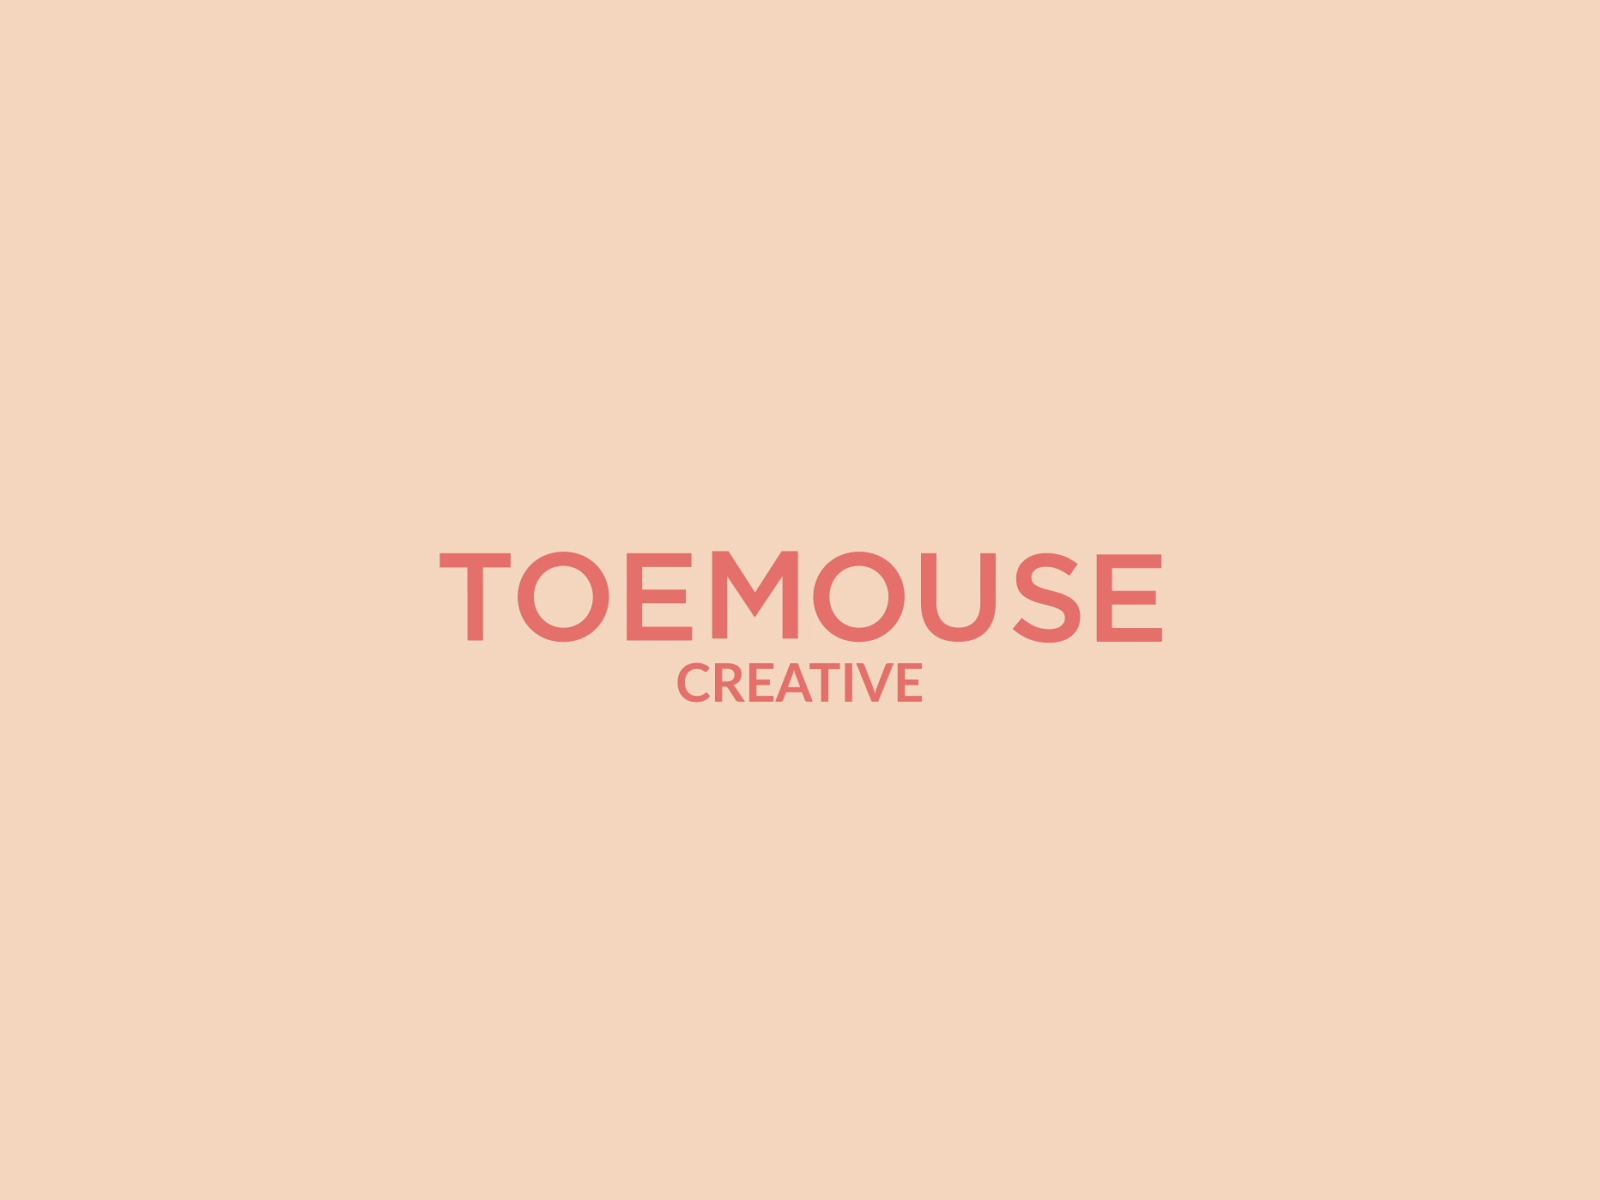 Toemouse Creative Logo Animation 2danimation design graphic design logo logo animation logo design logoanimation typogaphy